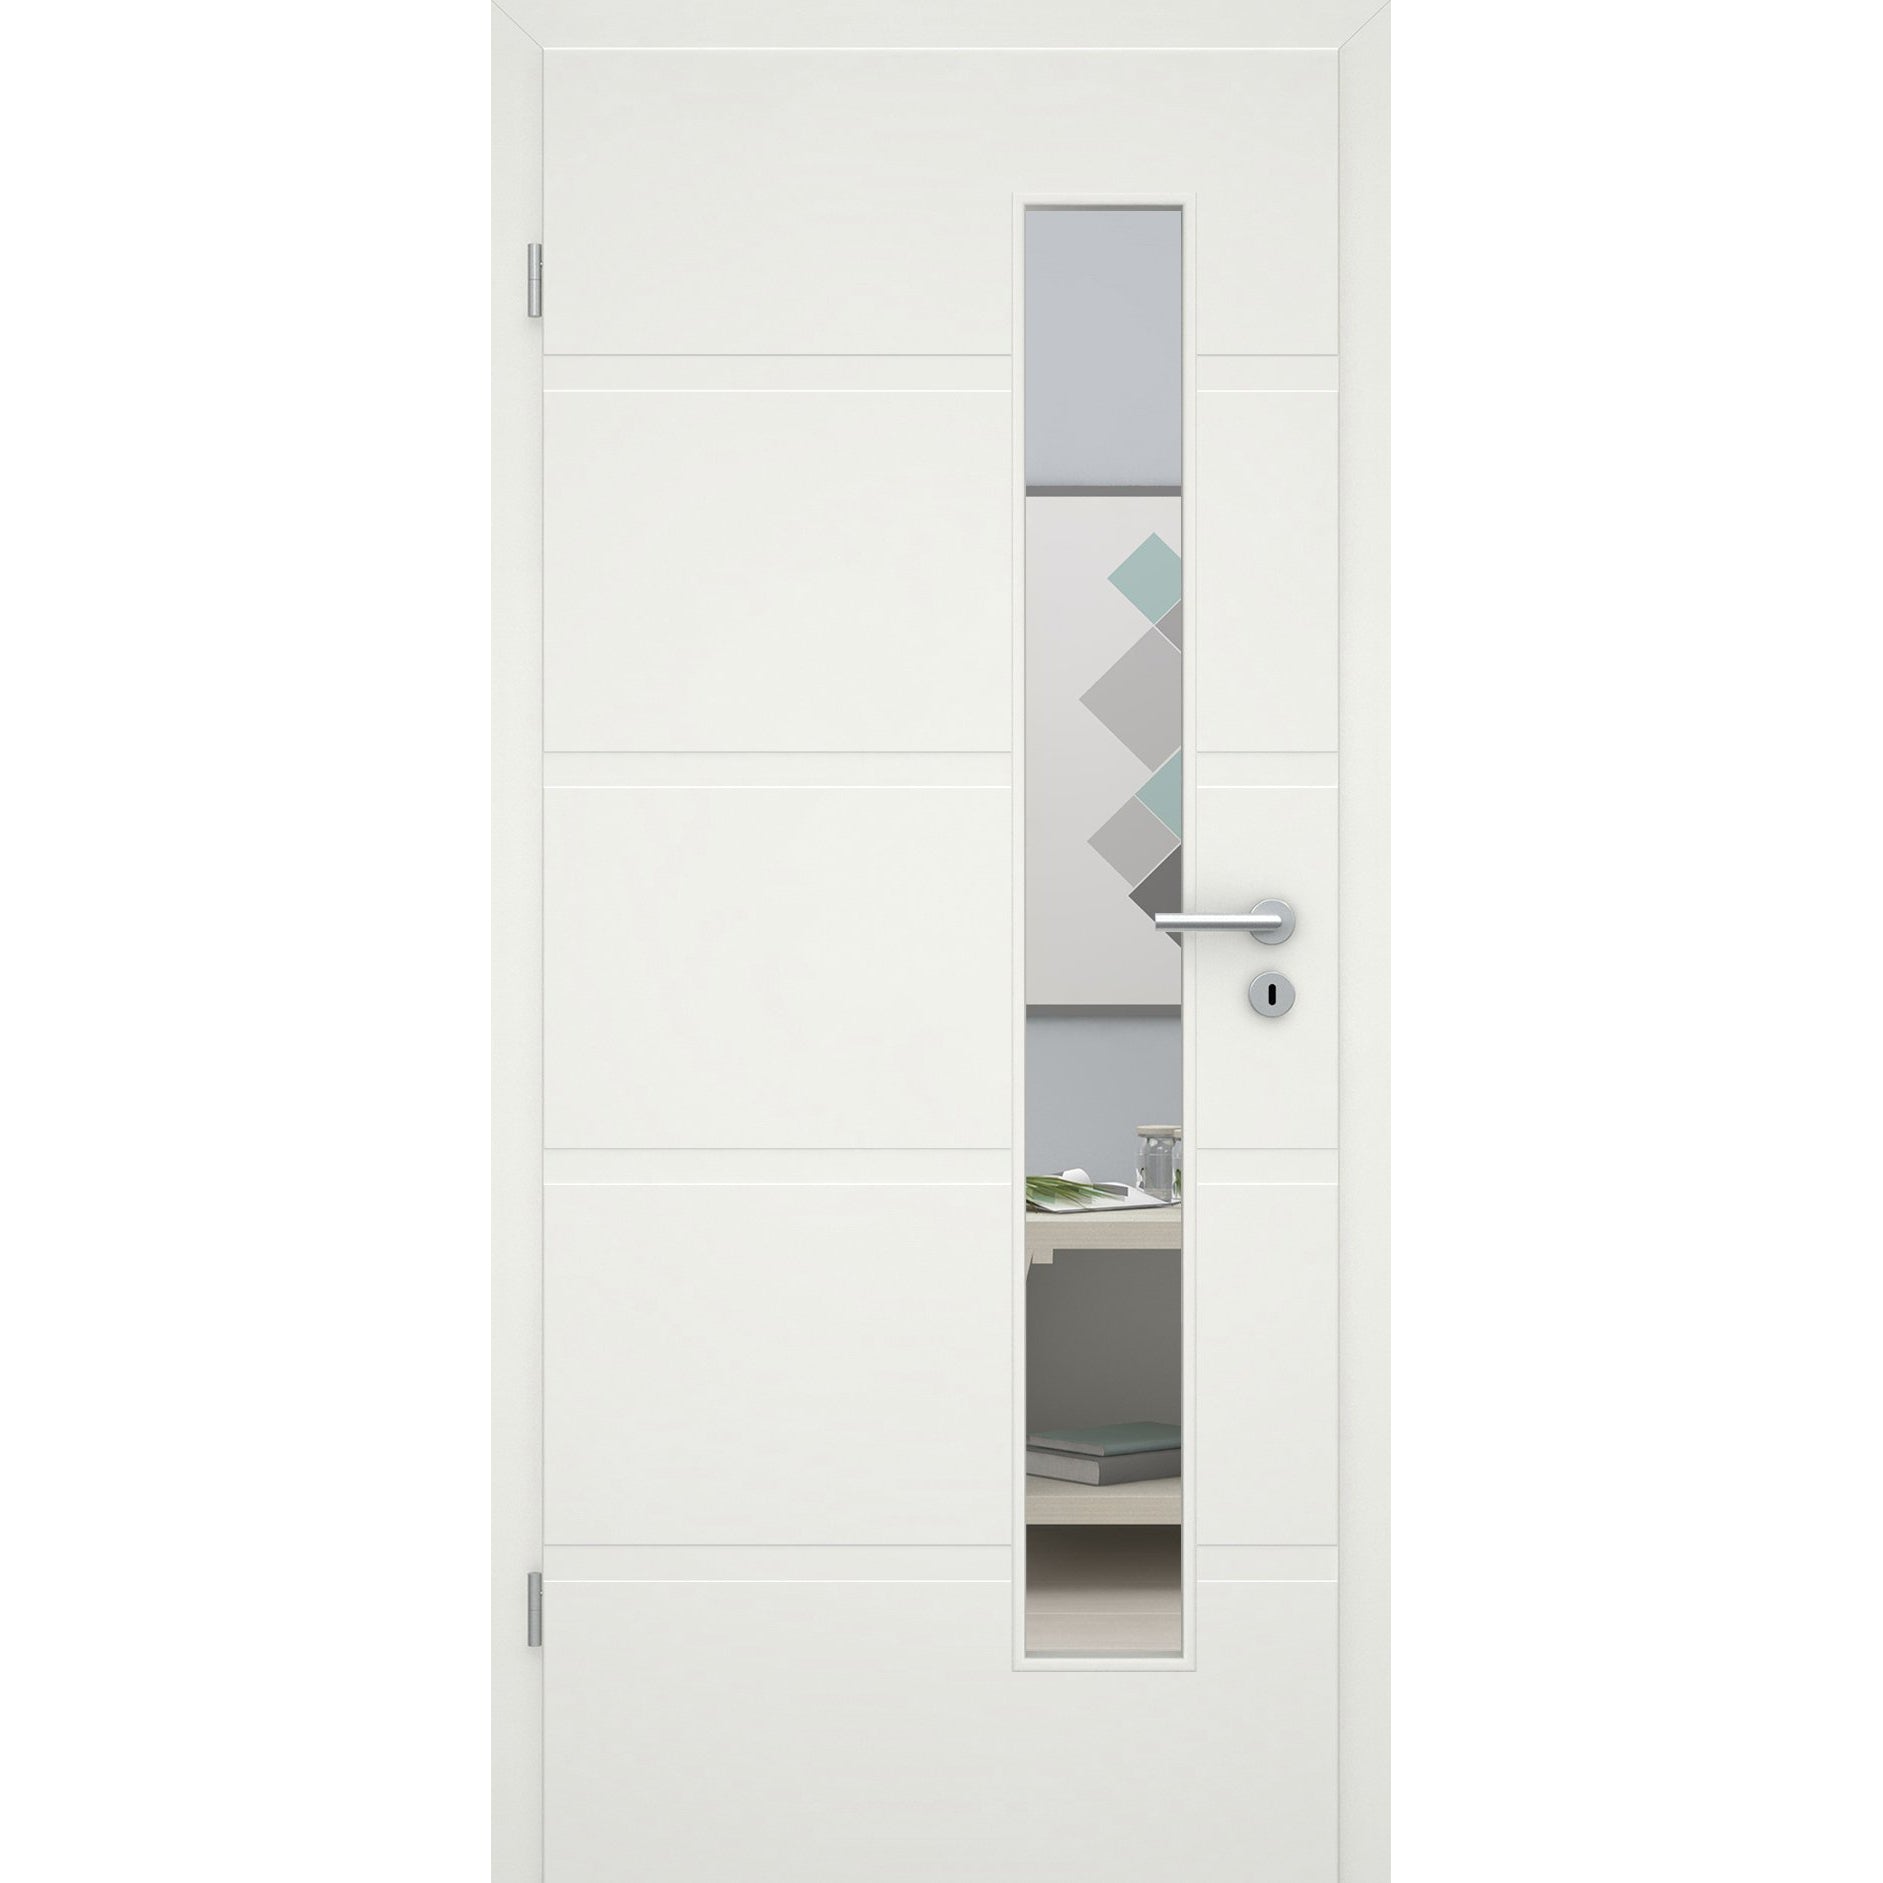 Zimmertür mit Lichtausschnittsoft-weiß 4 breite Rillen Eckkante - Modell Designtür QB41LAS